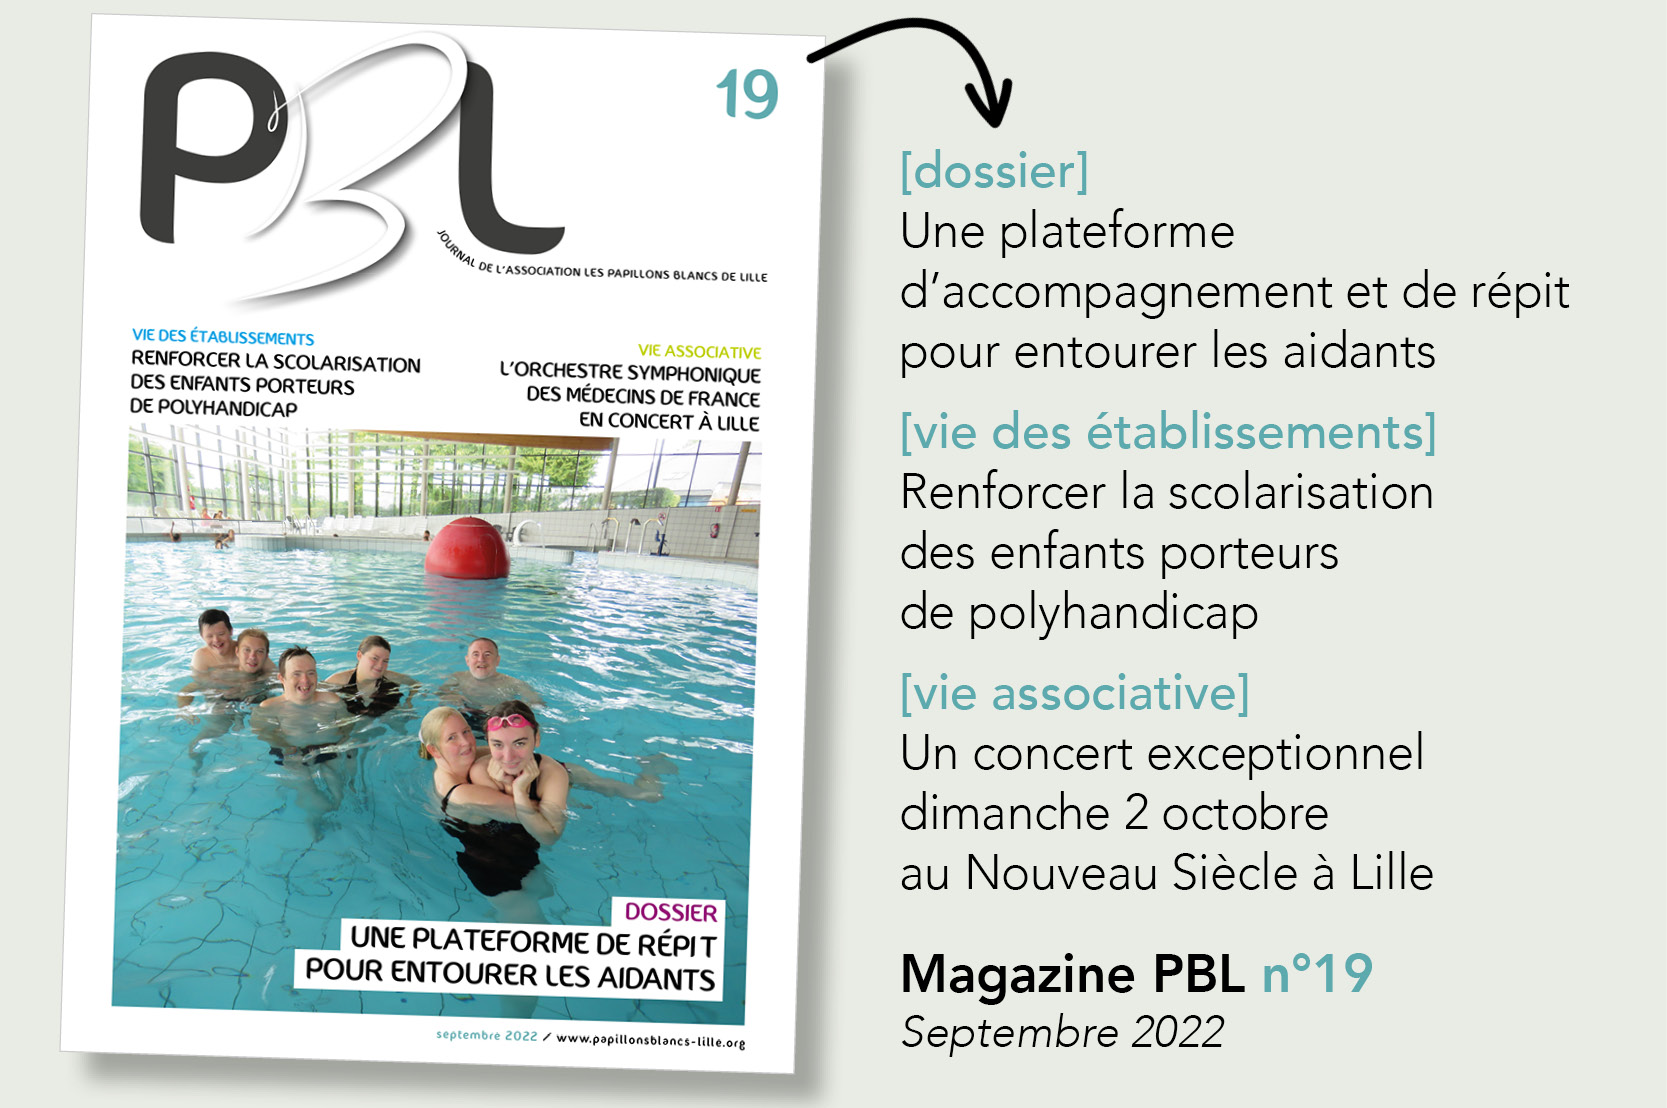 Magazine PBL Les Papillons Blancs de Lille numéro 19 septembre 2022